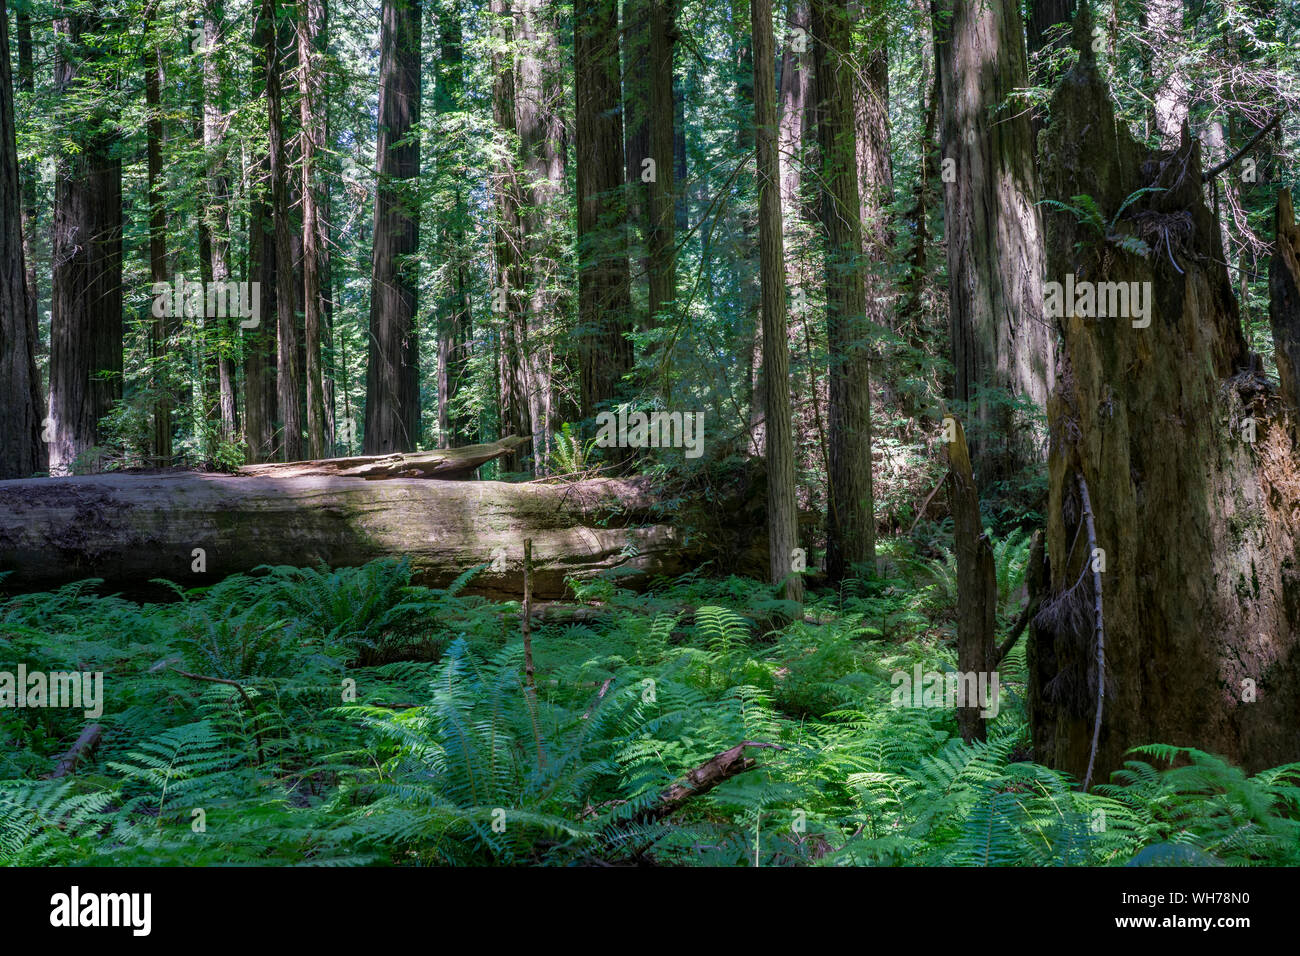 Humboldt Redwoods State Park è un parco statale in California contenente la più grande del mondo contiguo rimanente di vecchia foresta di coast redwoods. Foto Stock